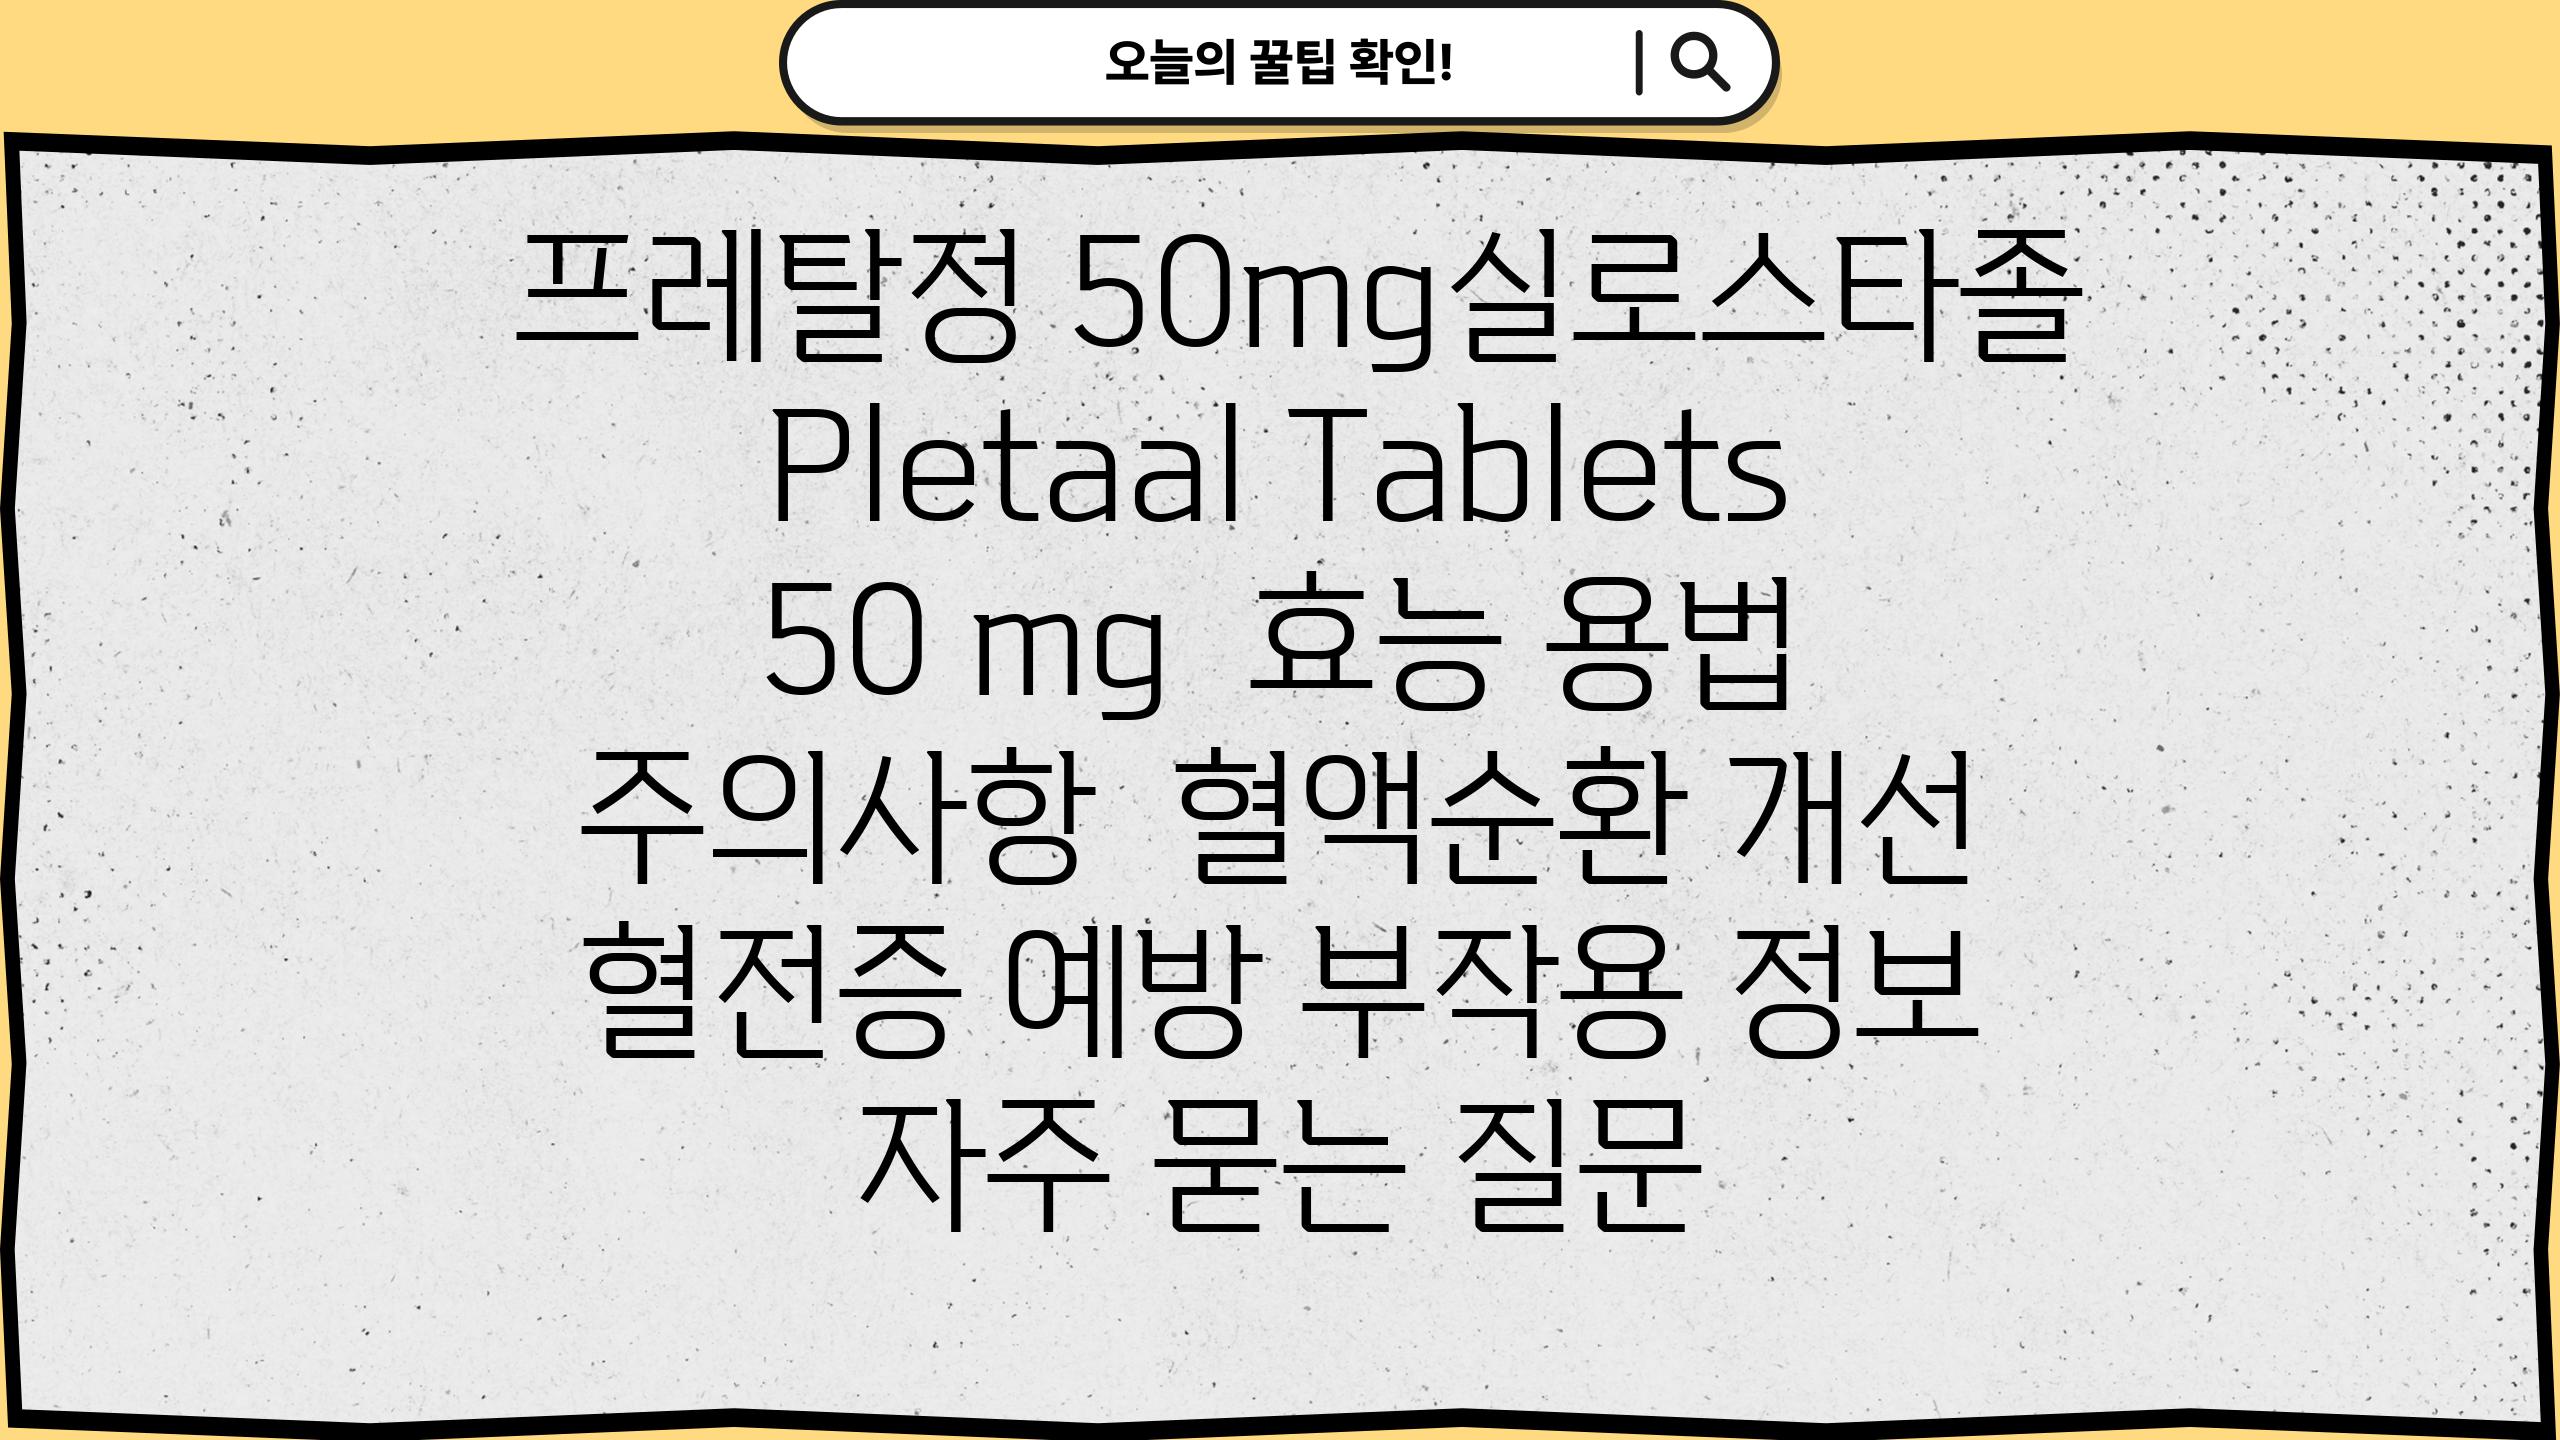  프레탈정 50mg실로스타졸 Pletaal Tablets 50 mg  효능 용법 주의사항  혈액순환 개선 혈전증 예방 부작용 정보 자주 묻는 질문